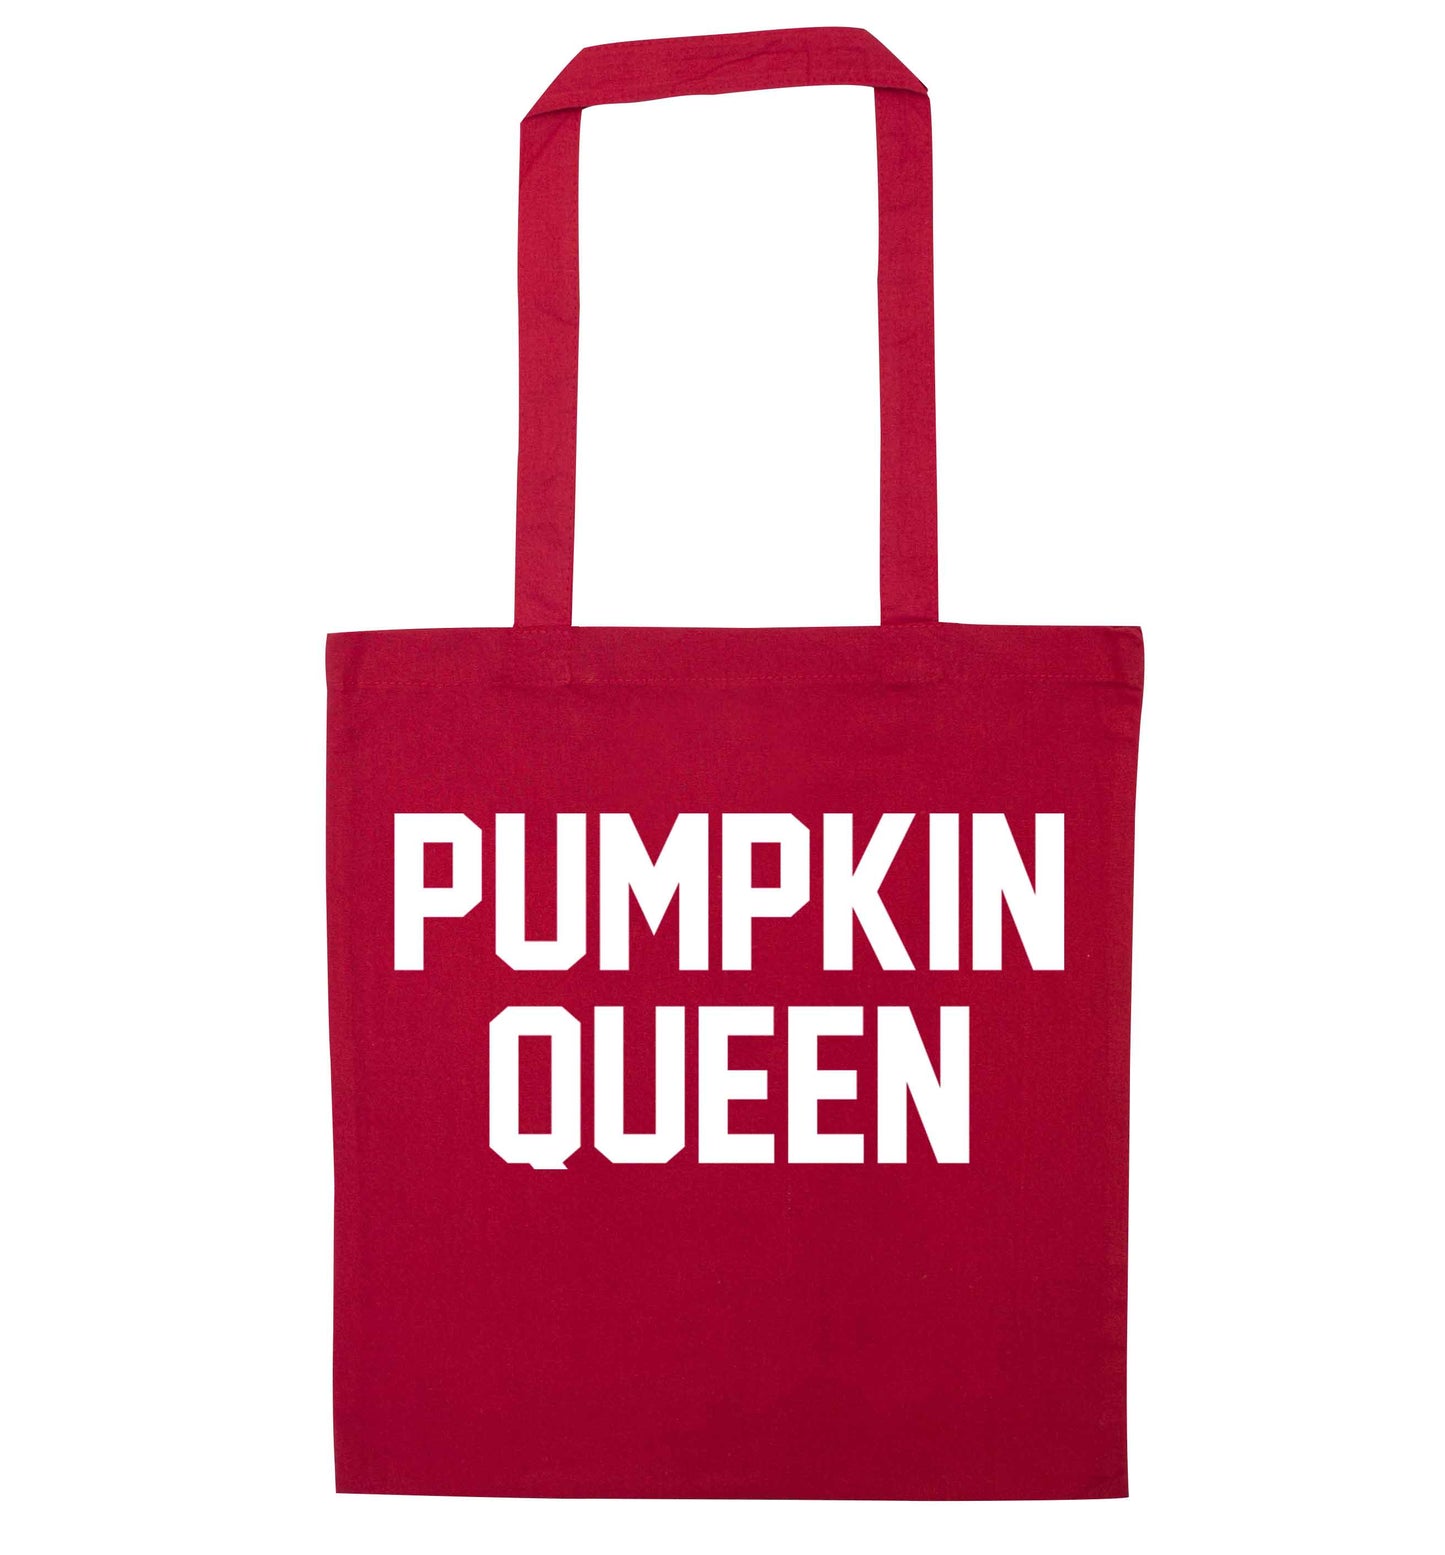 Pumpkin Queen red tote bag